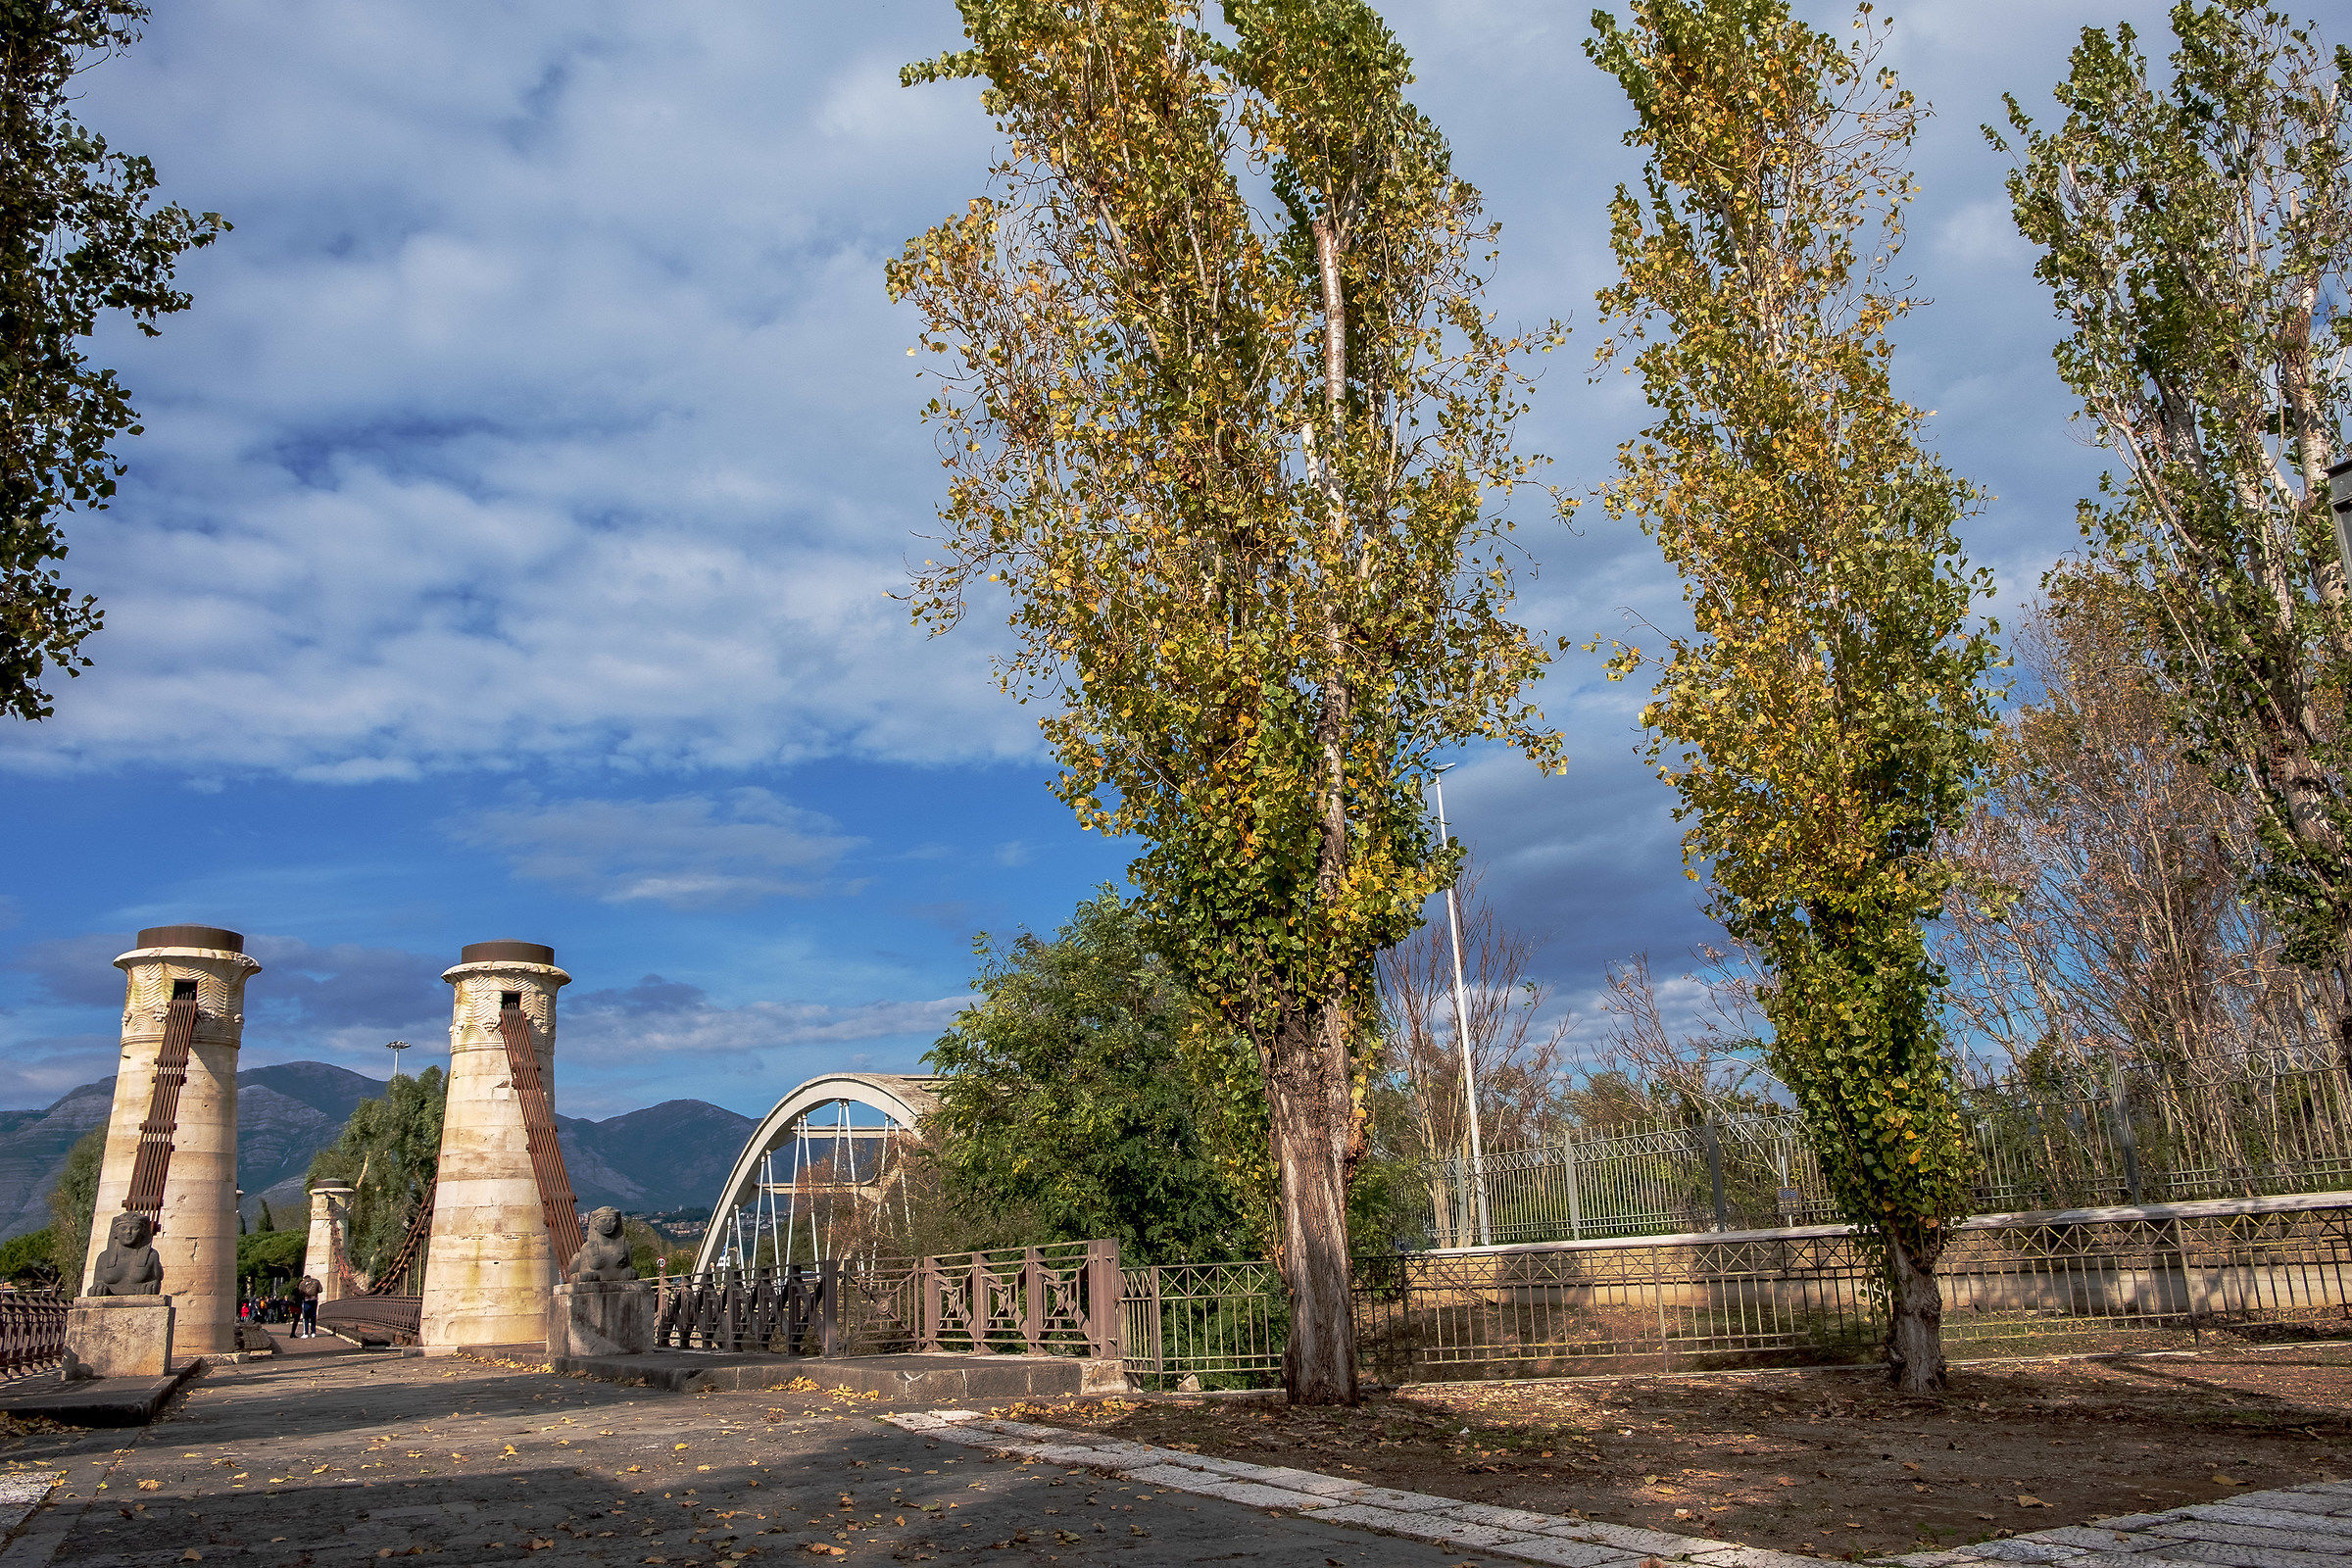 Bridges over the Garigliano River...